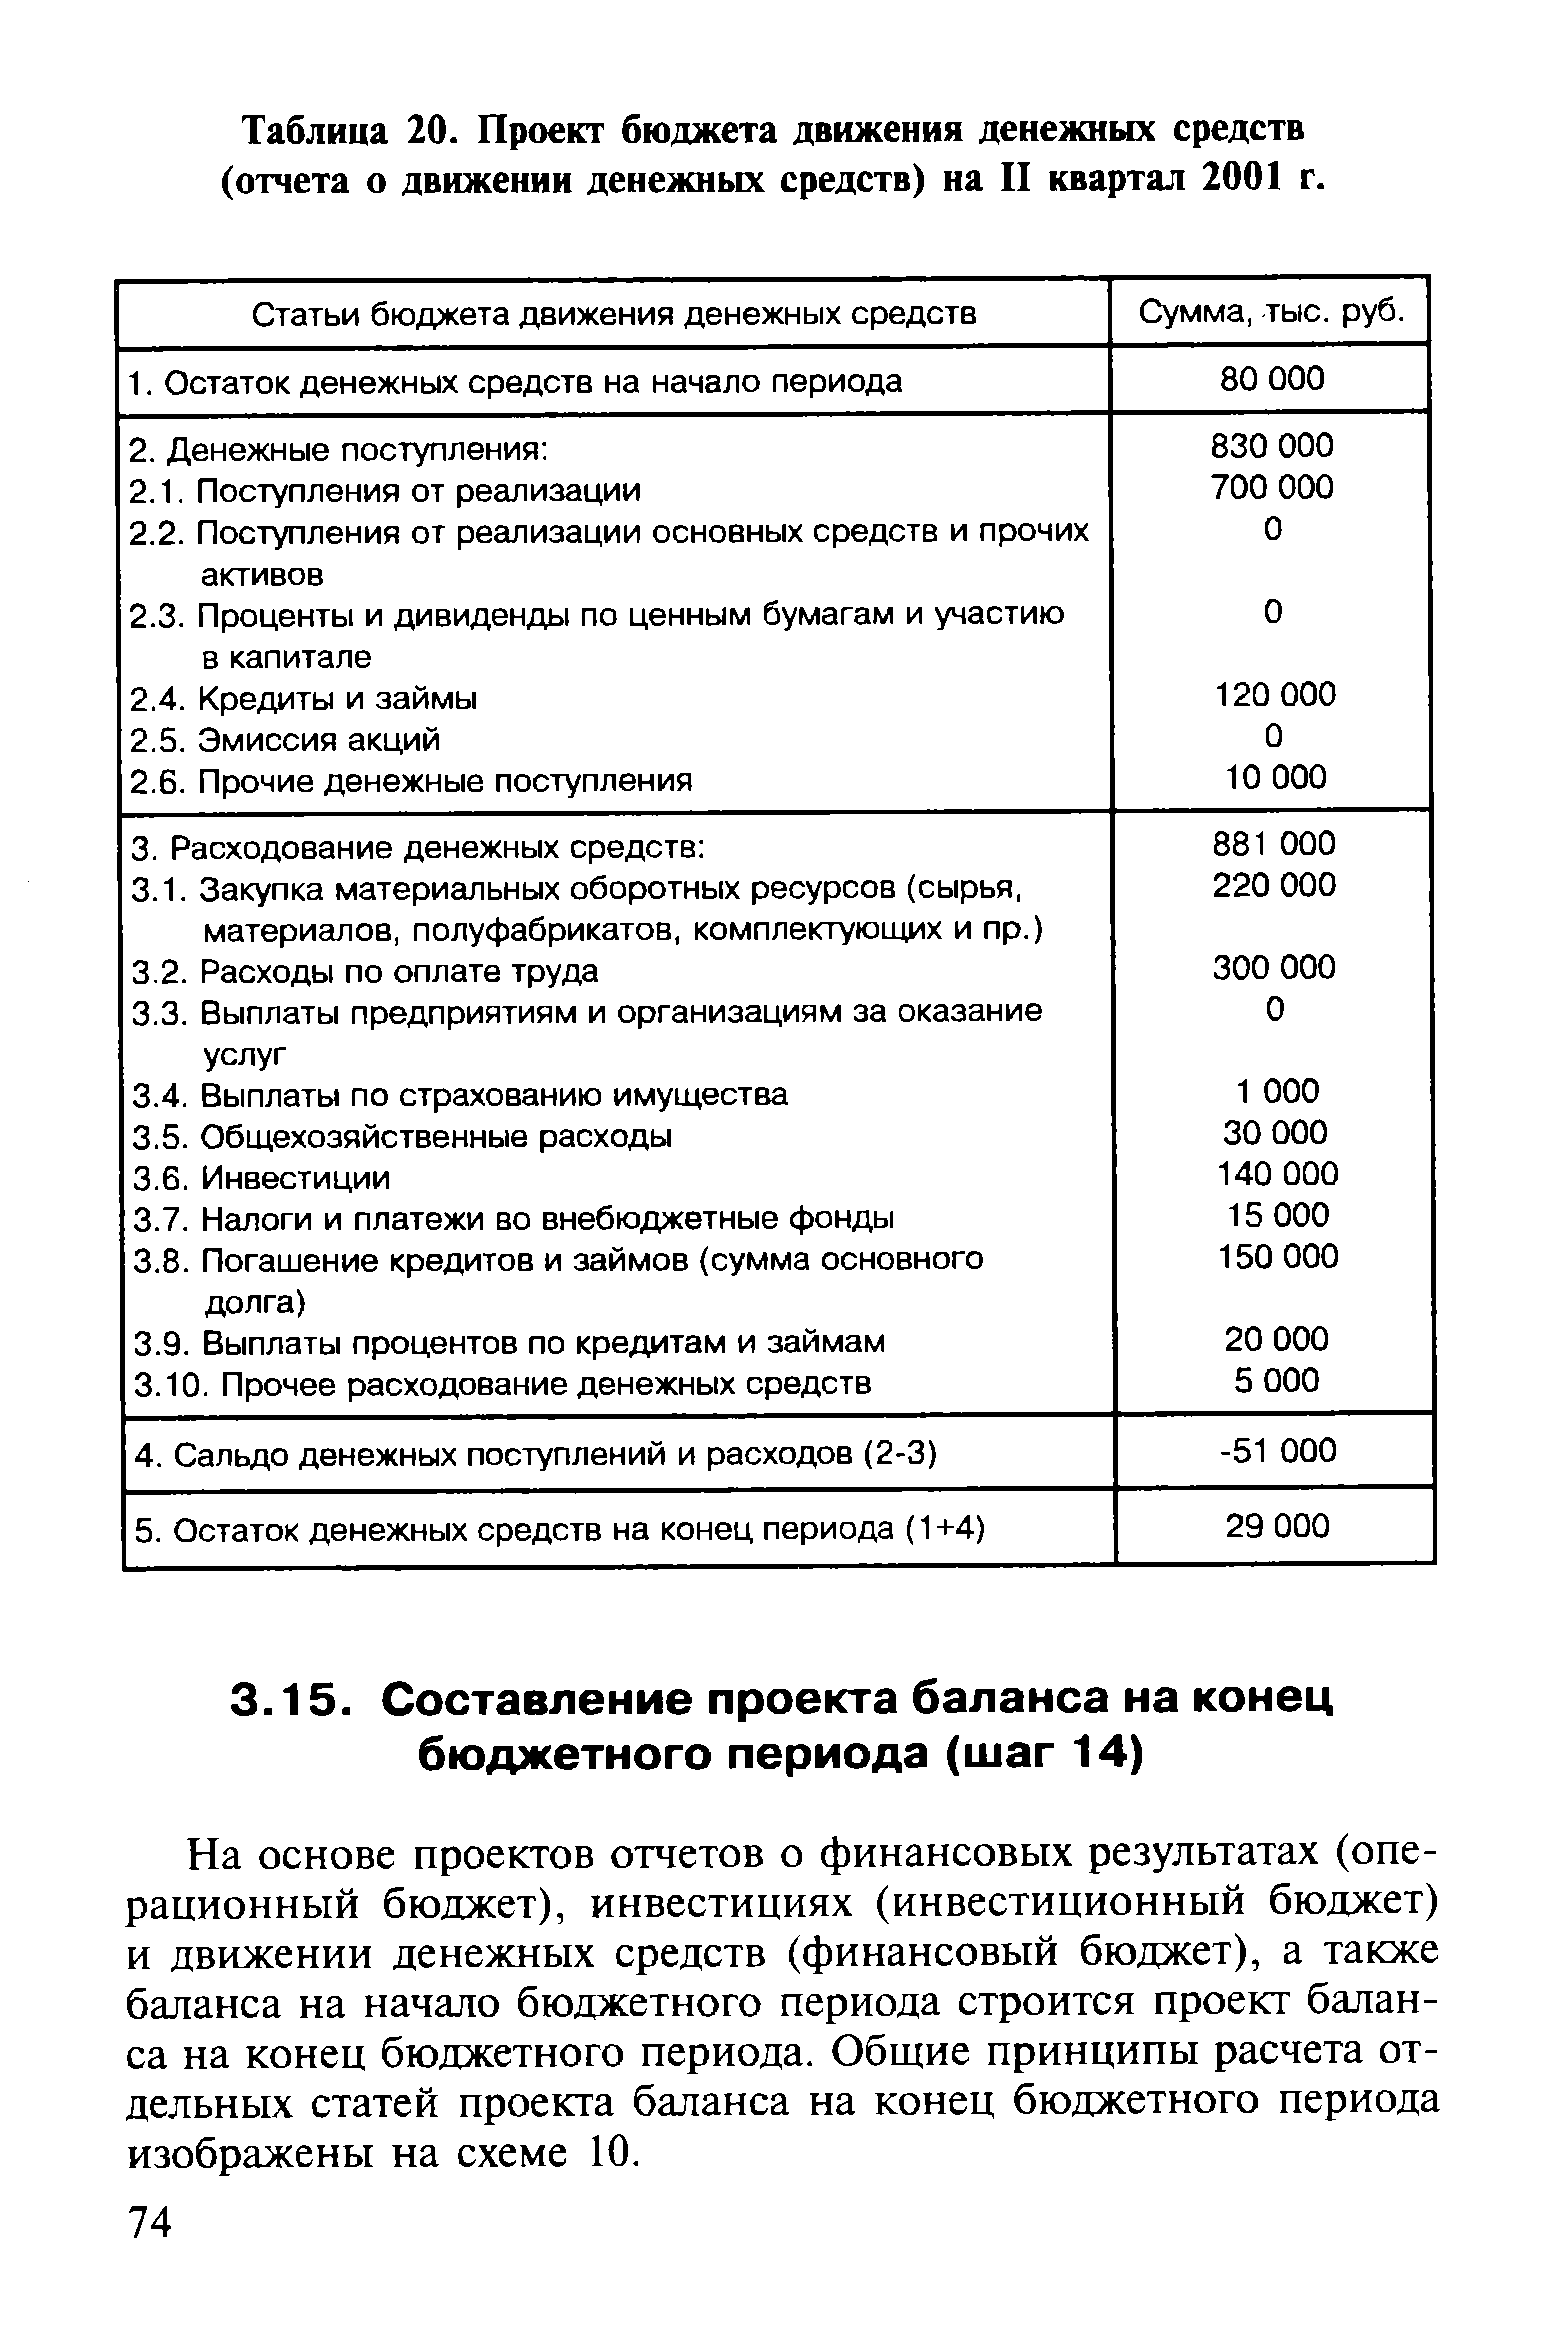 Таблица 20. Проект бюджета движения денежных средств (отчета о <a href="/info/13218">движении денежных средств</a>) на II квартал 2001 г.